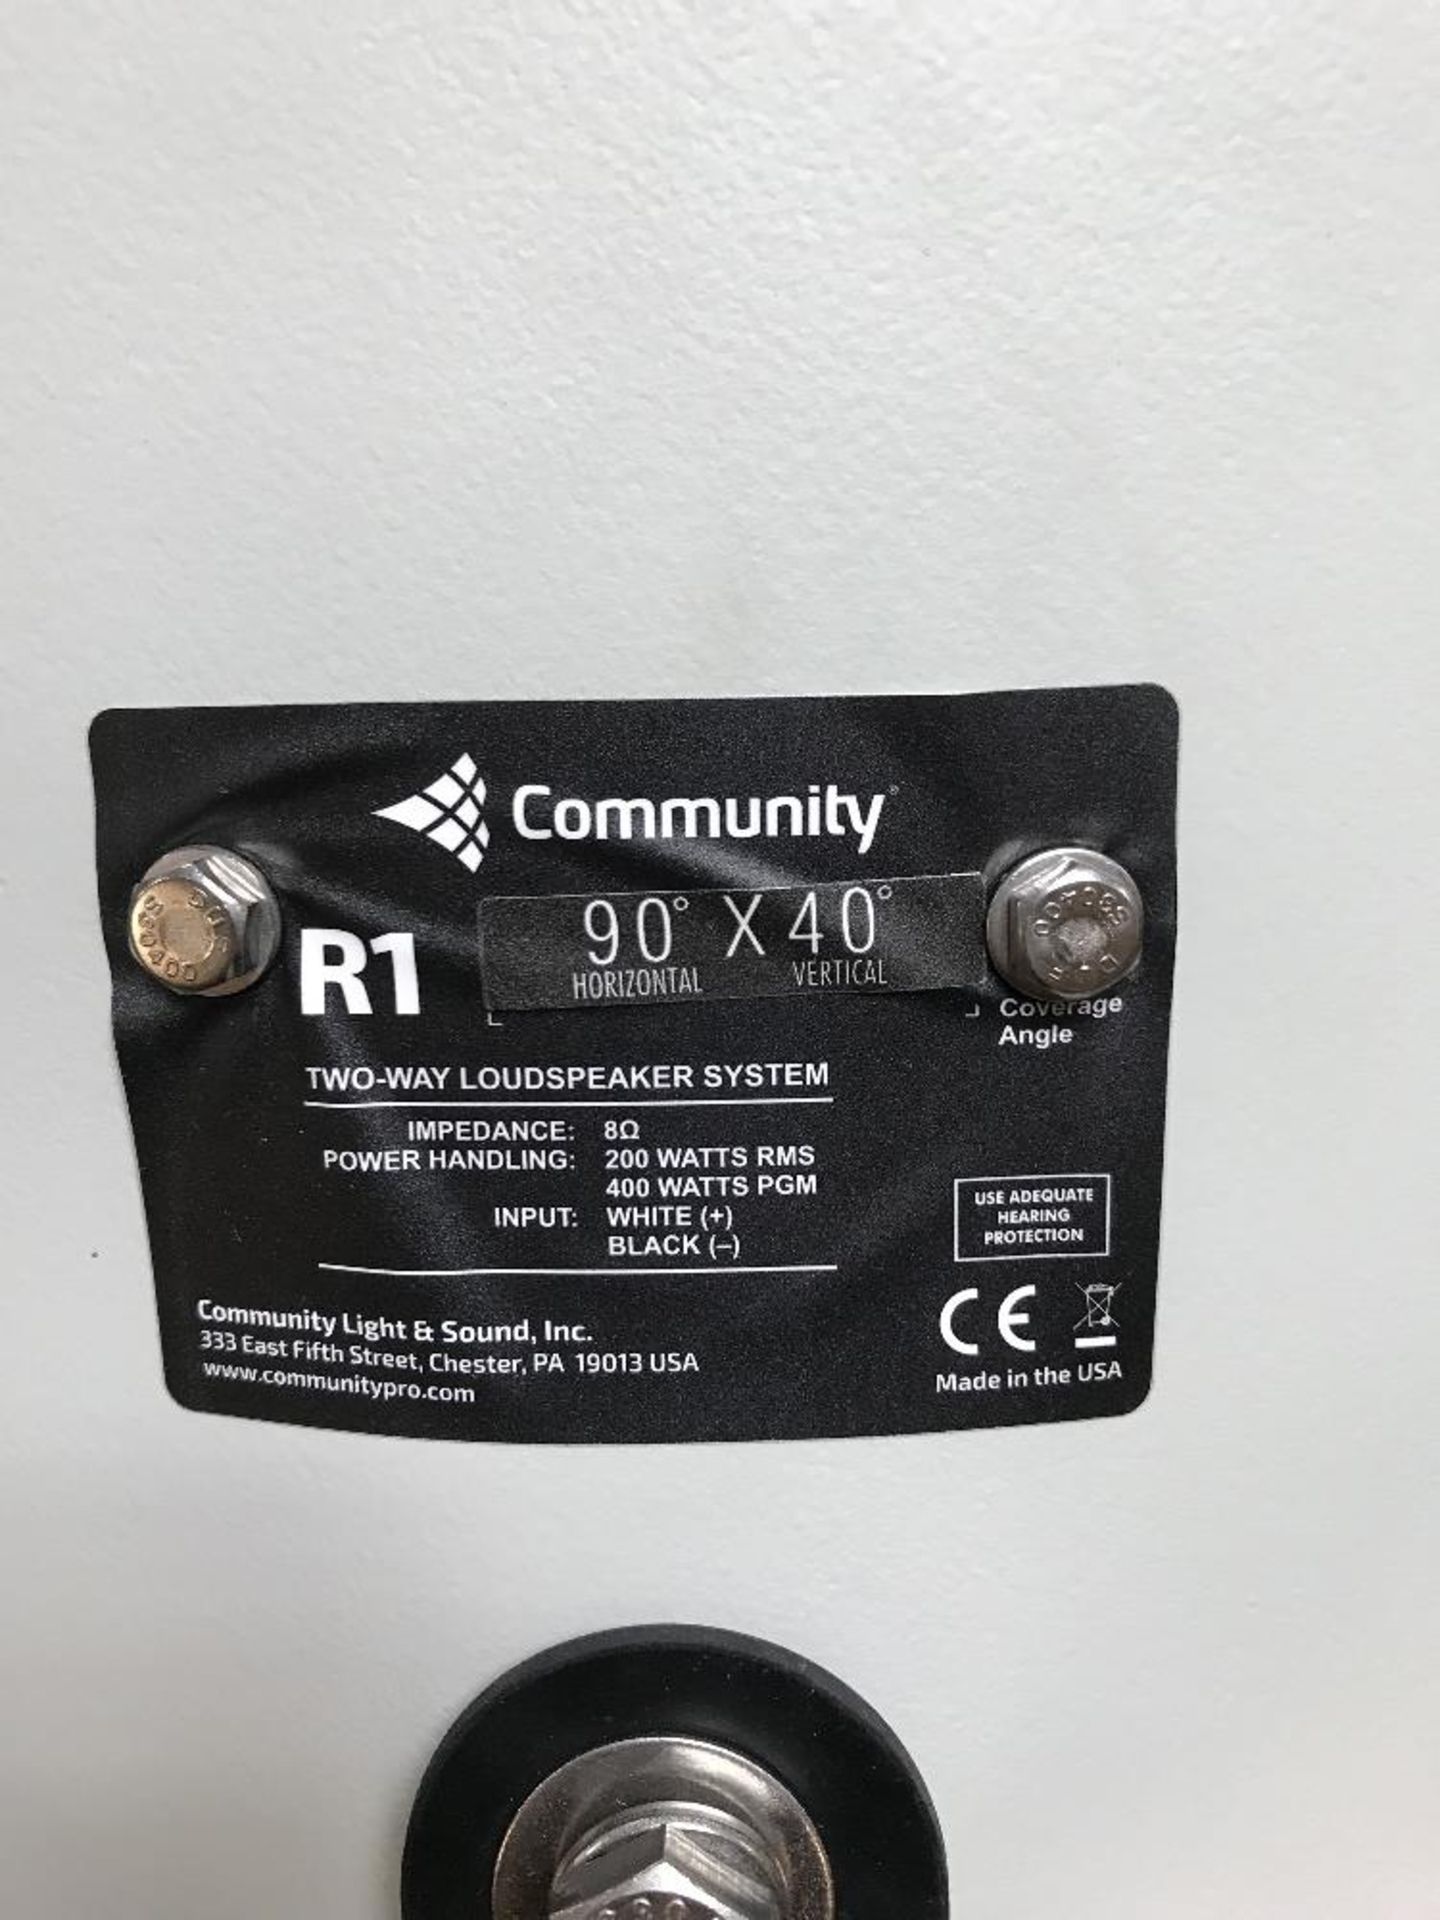 Community R1-945 Proffesional Loudspeaker - Image 4 of 7